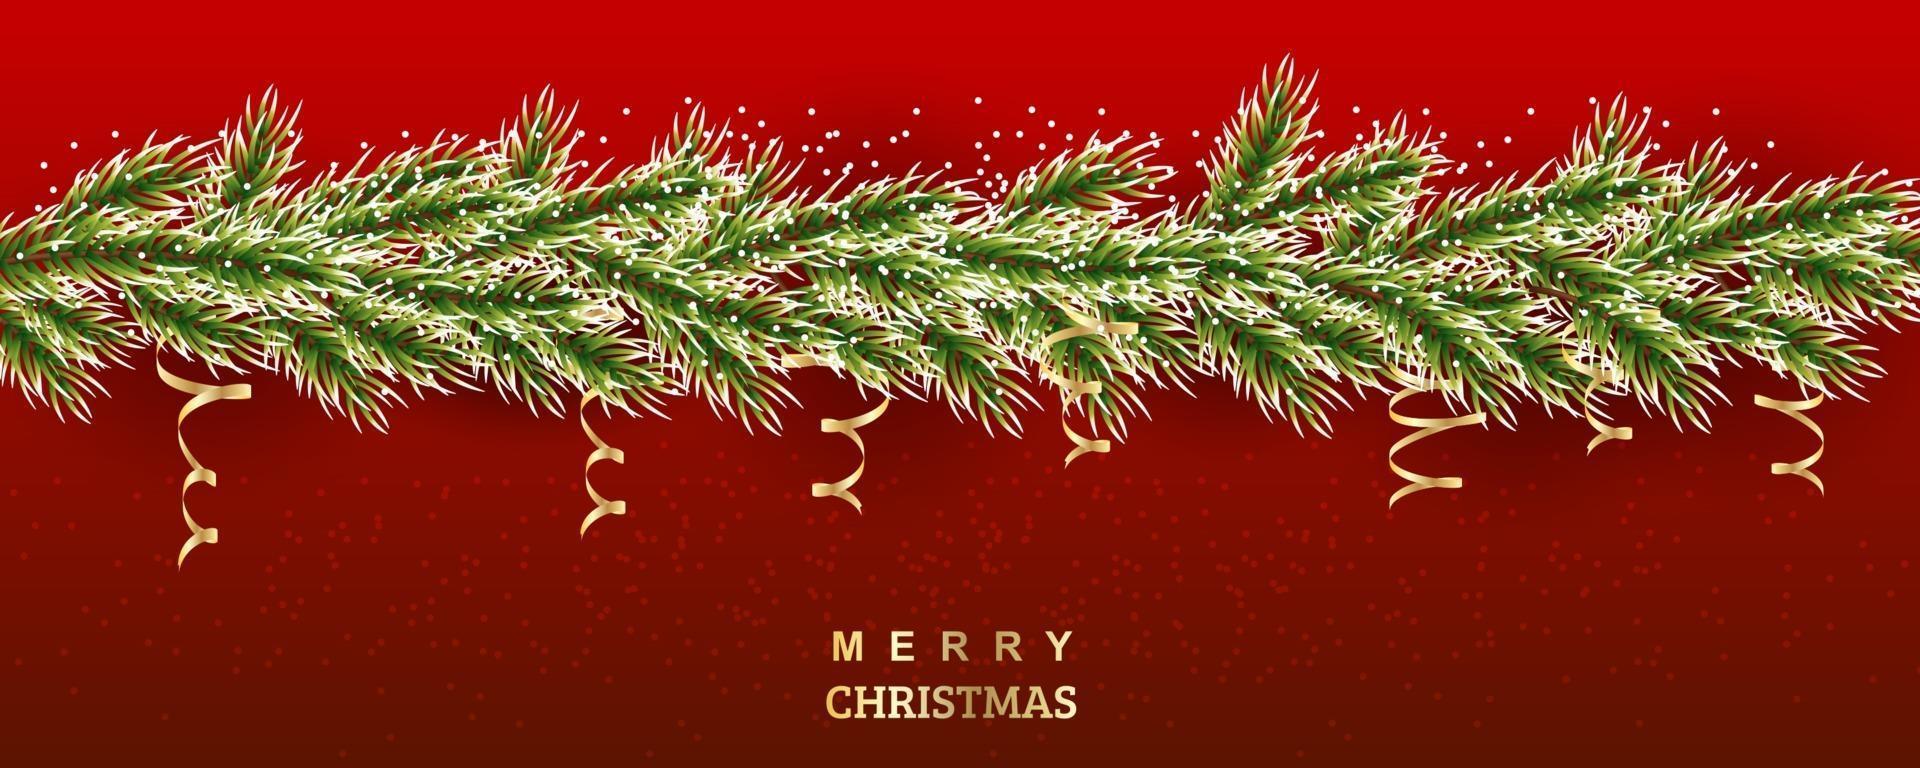 ilustração da árvore de natal. ramos nevados de abeto com serpentina de ouro. fundo do vetor para banners, sites, convites. borda realista em um fundo vermelho